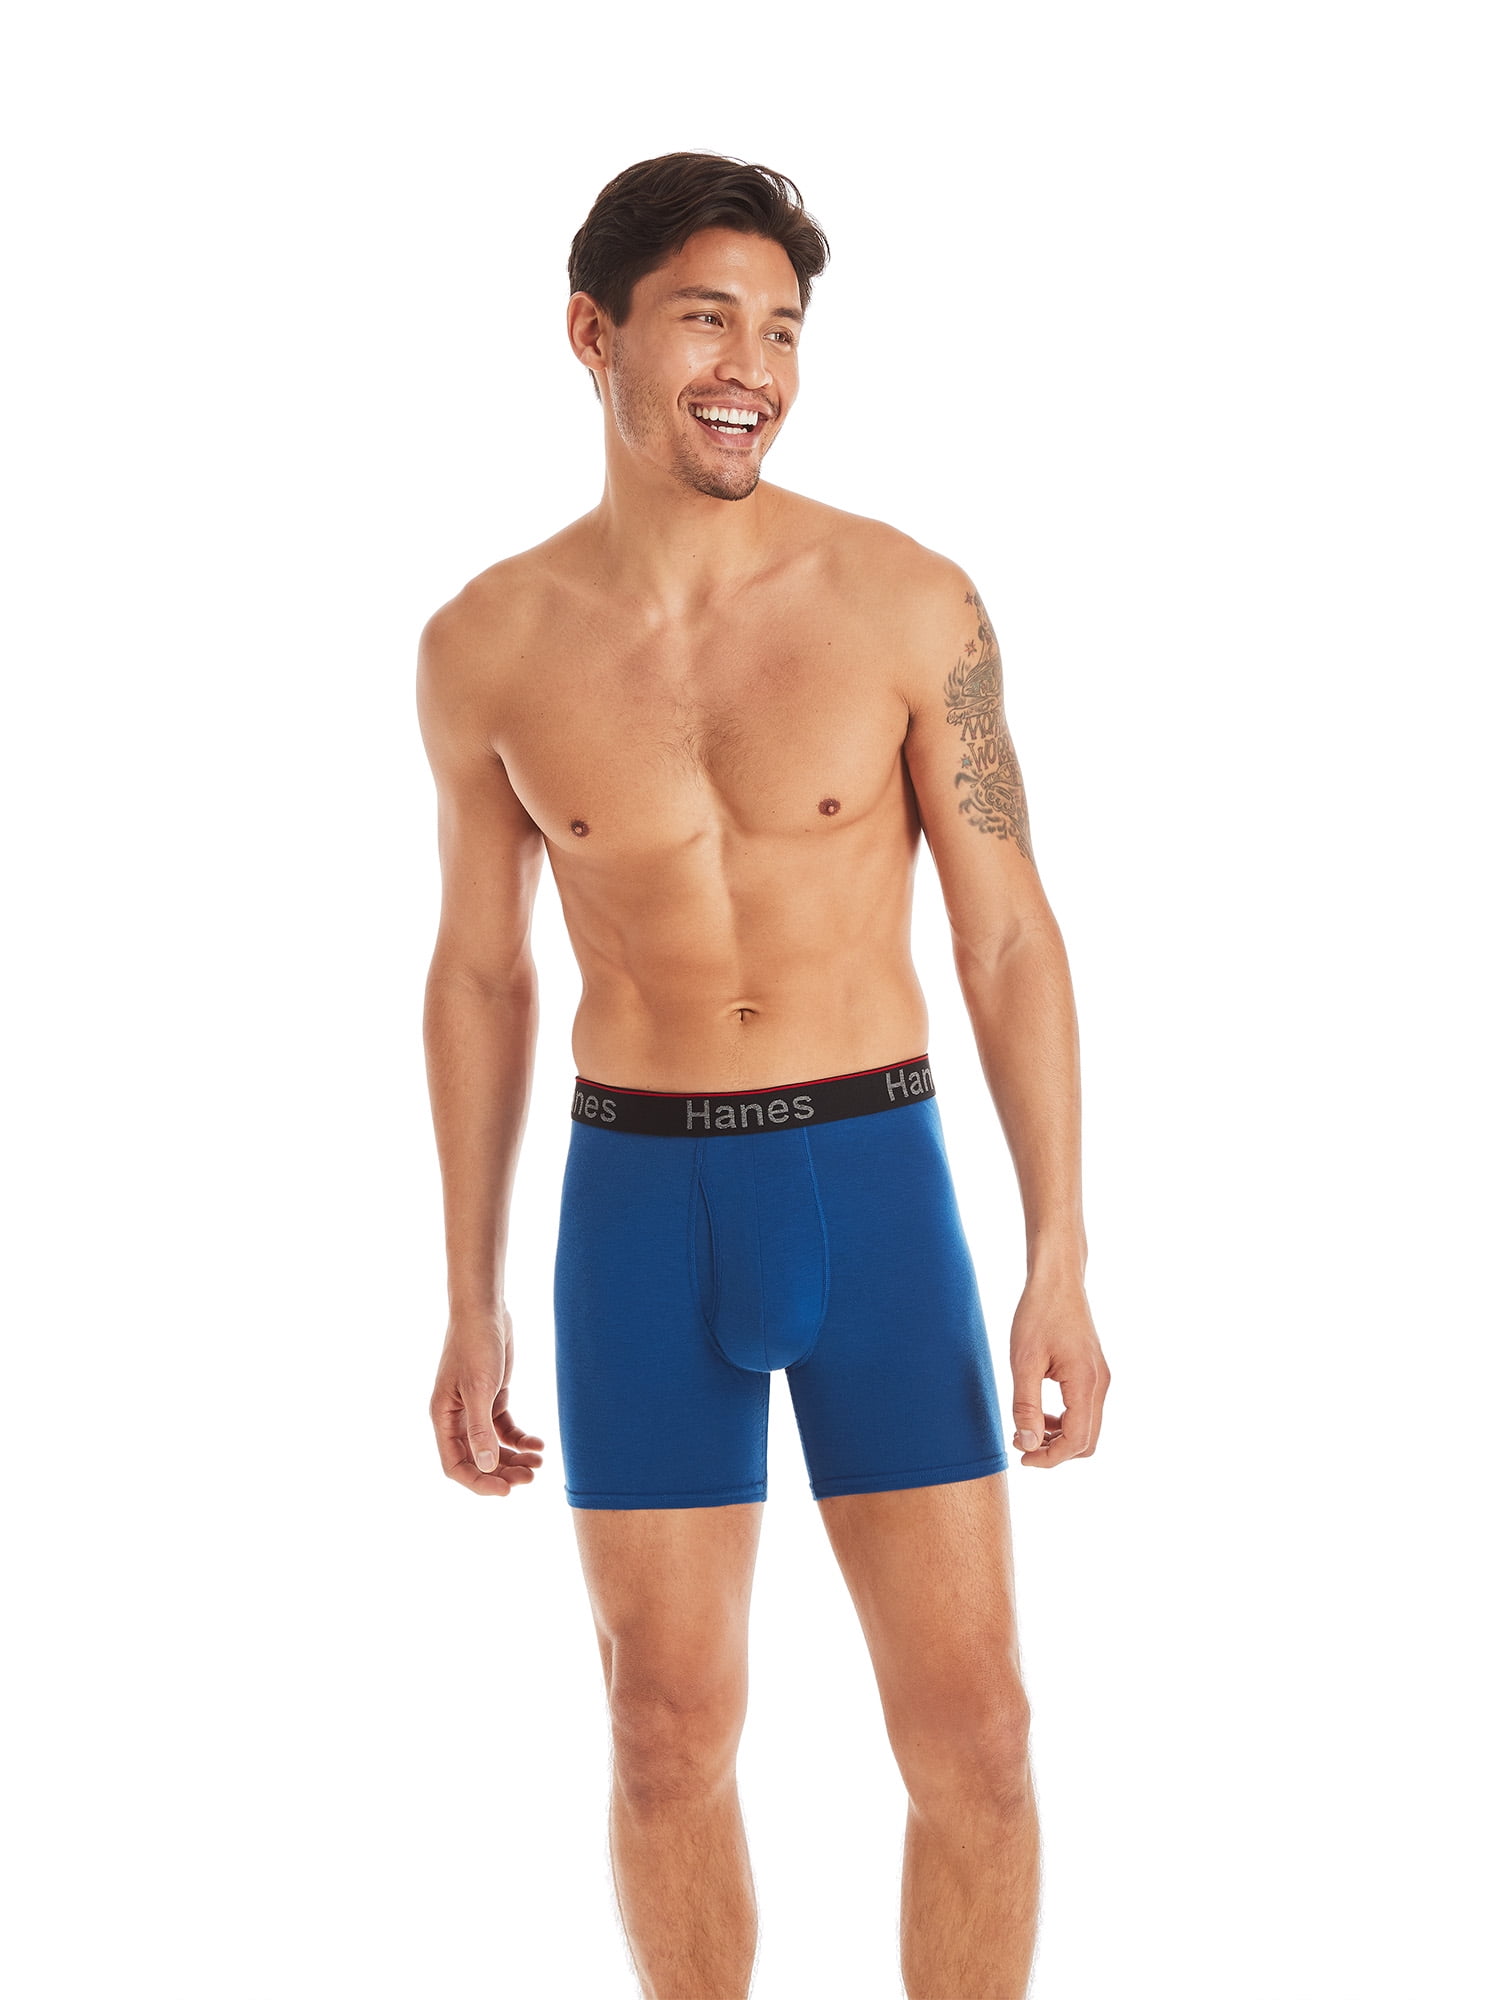 Hanes Men's Comfort Flex Fit Total Support Pouch Boxer Briefs, 3